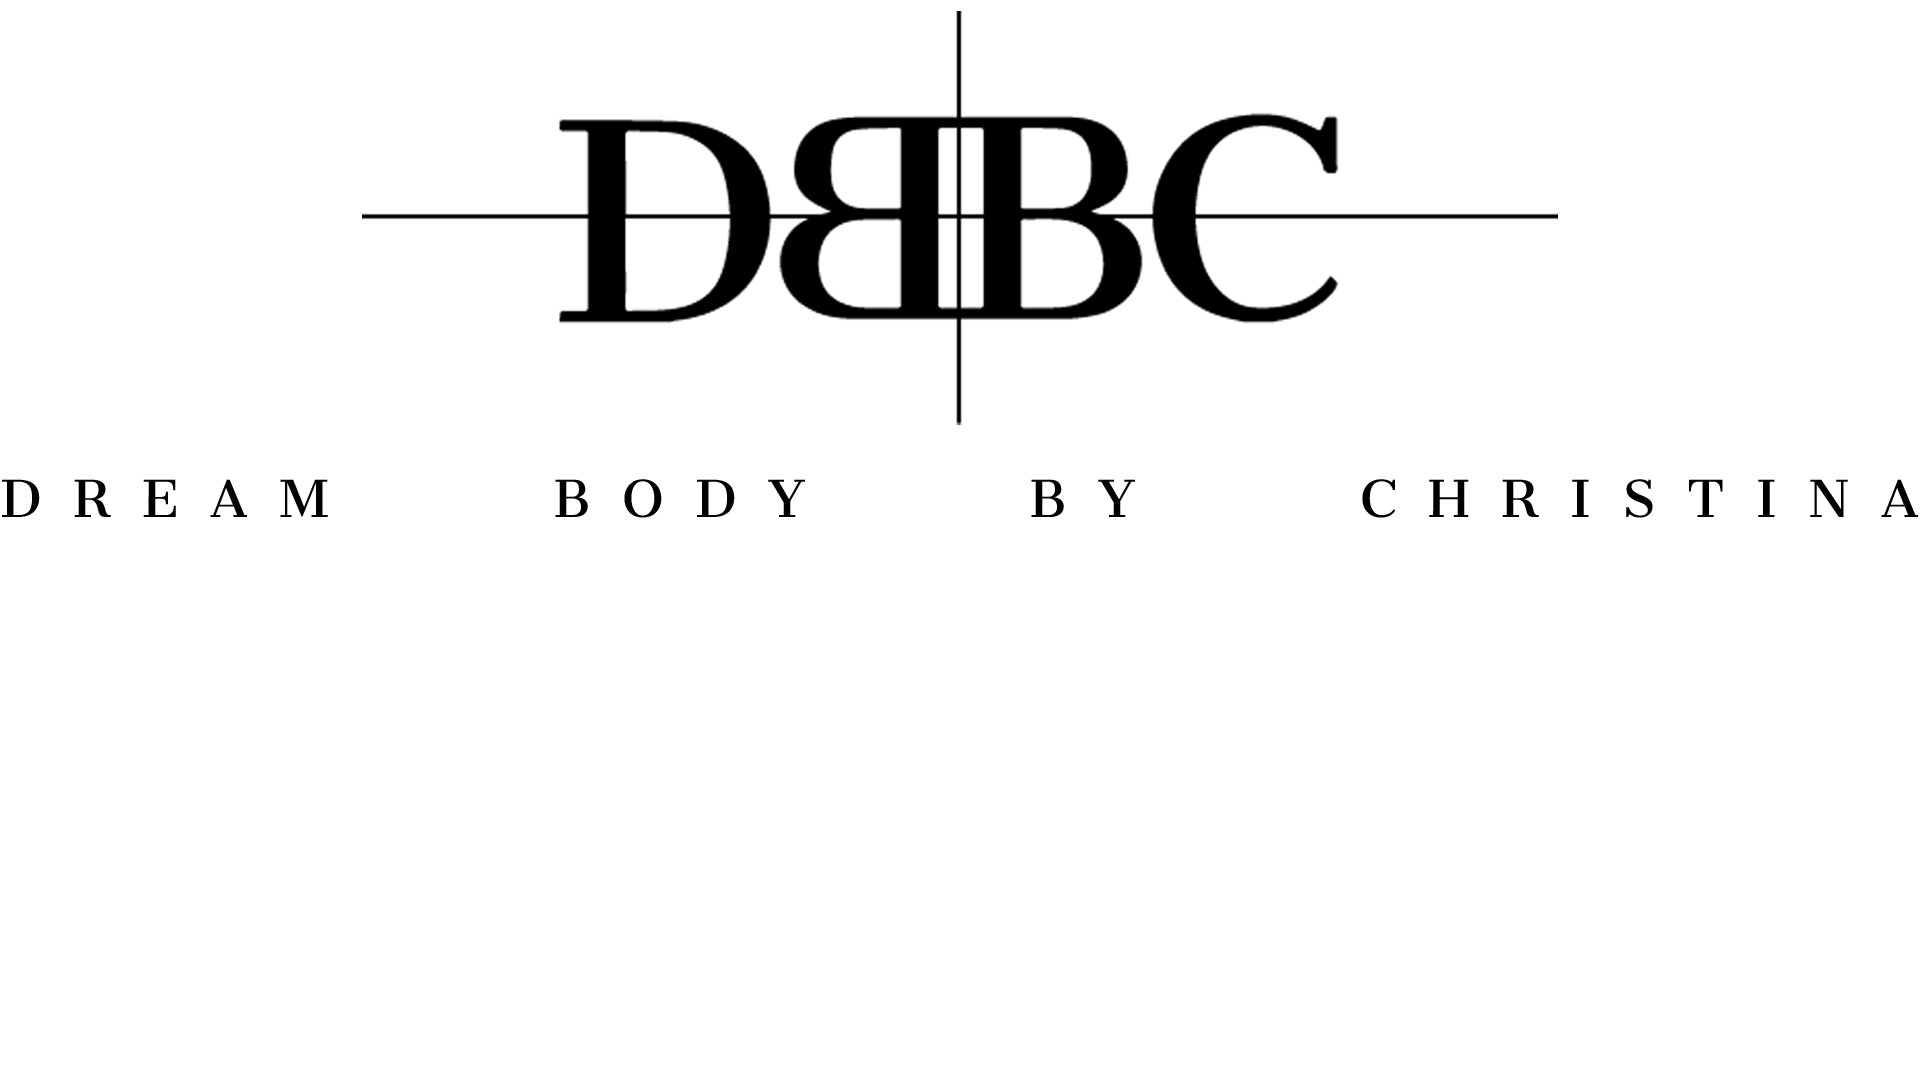 DBBC